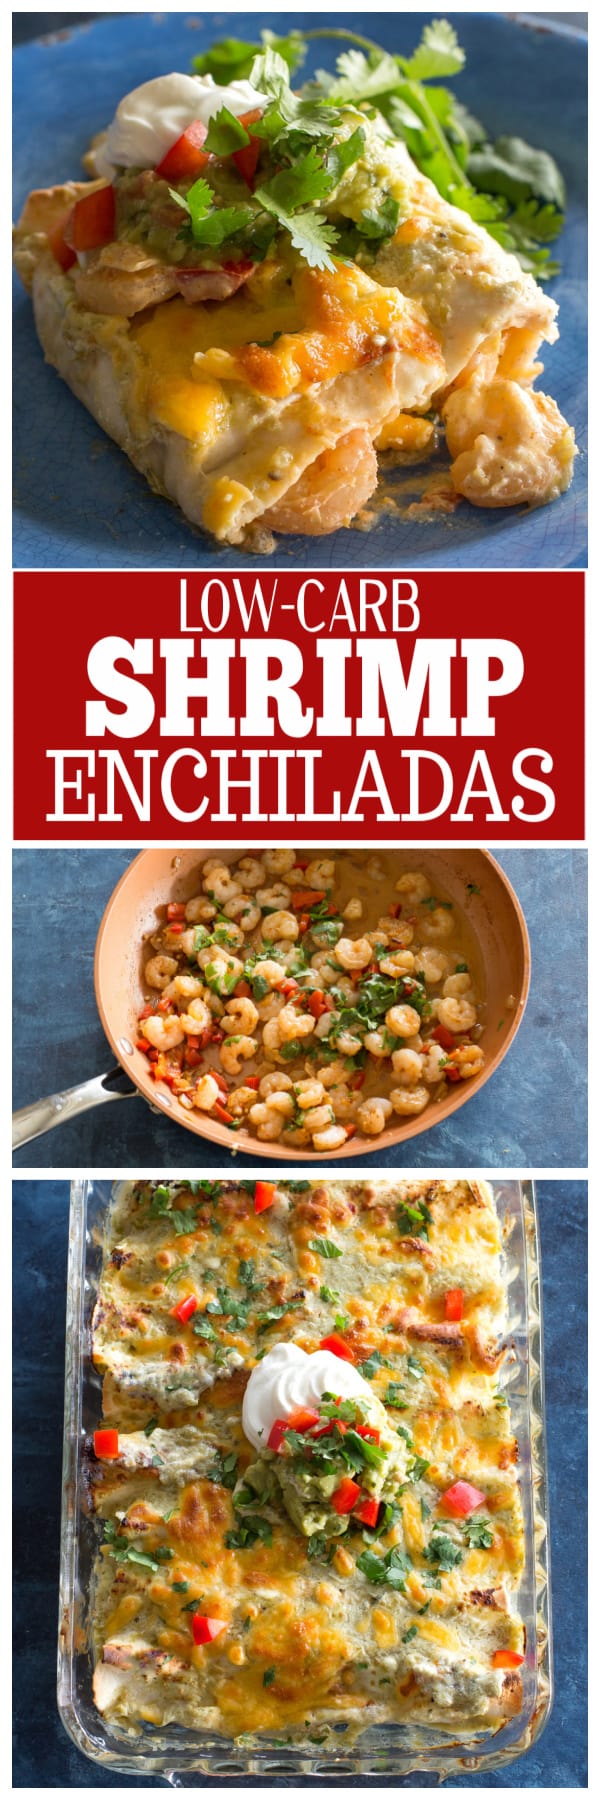 low-carb shrimp enchiladas